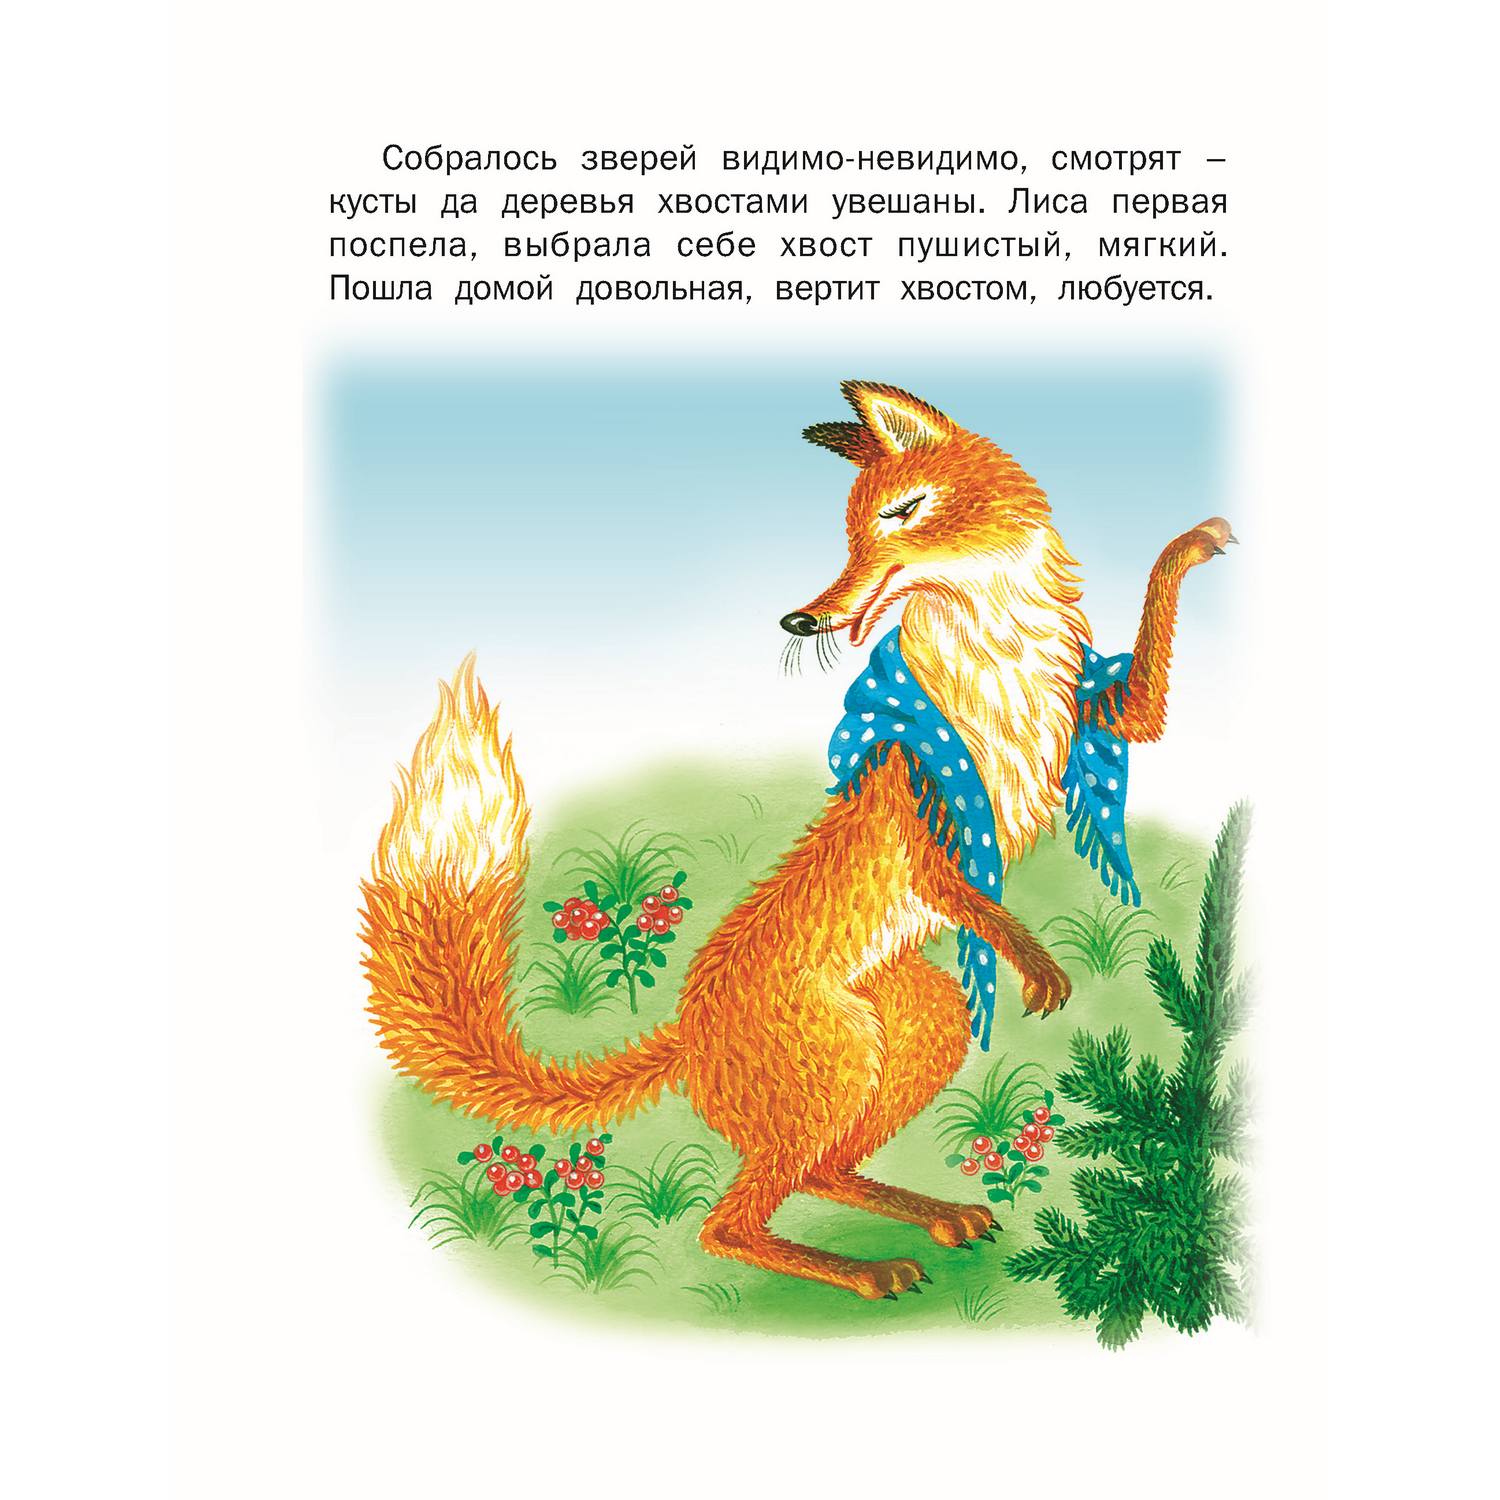 Набор книг Русич стихи и сказки для детей 6 шт - фото 13